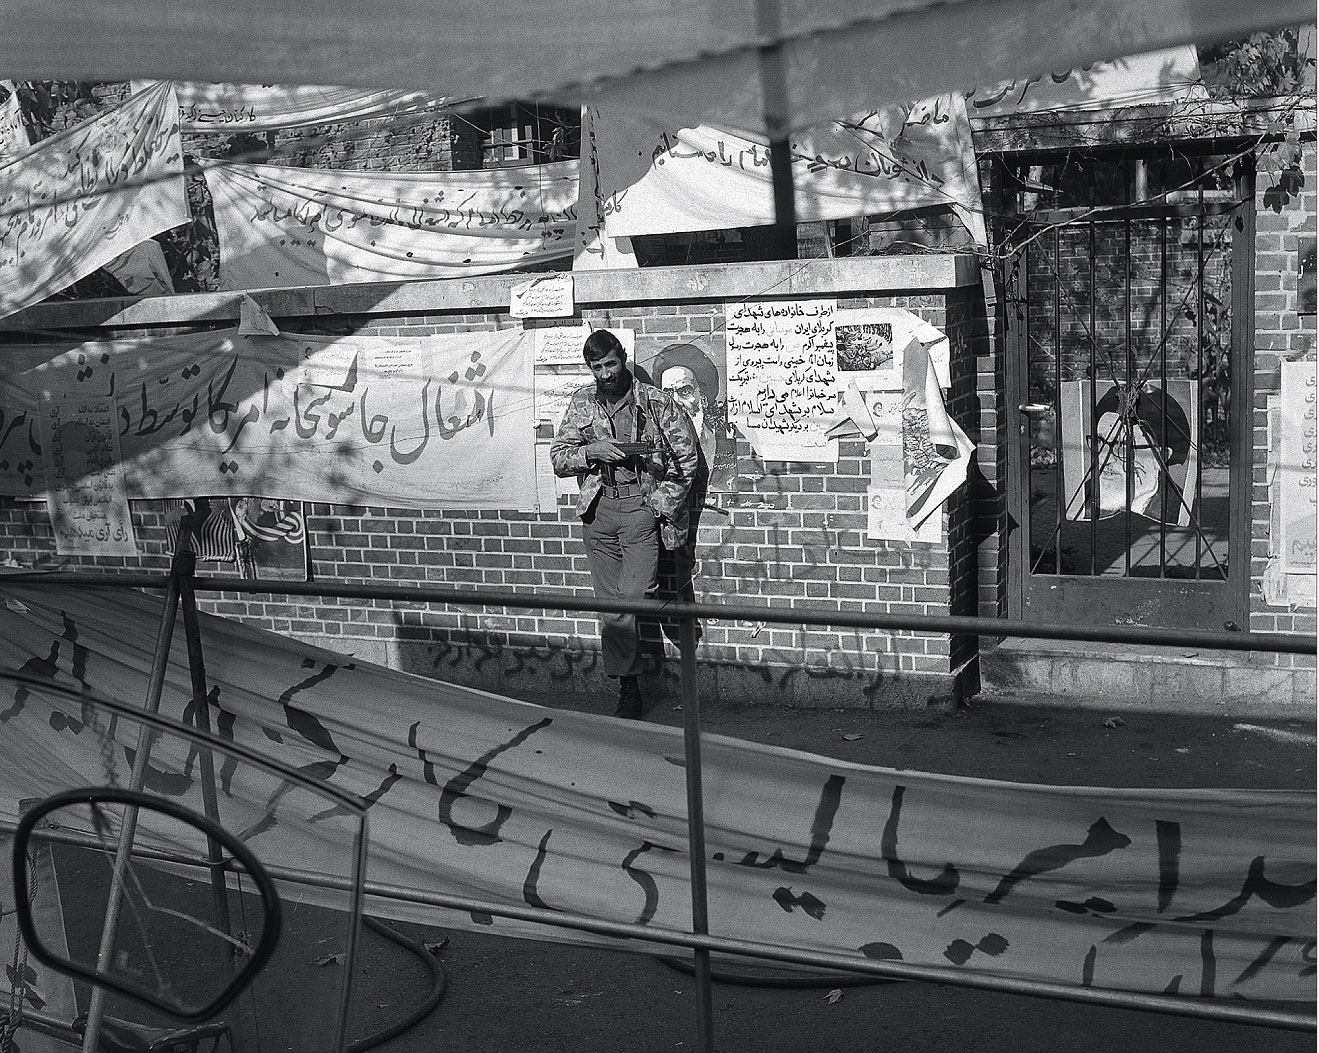 Революционный студент, издали позирующий фотографу у стены посольства США в Тегеране 4 ноября 1979 года, при ближайшем рассмотрении приобретает черты сходства с нынешним президентом Ирана 